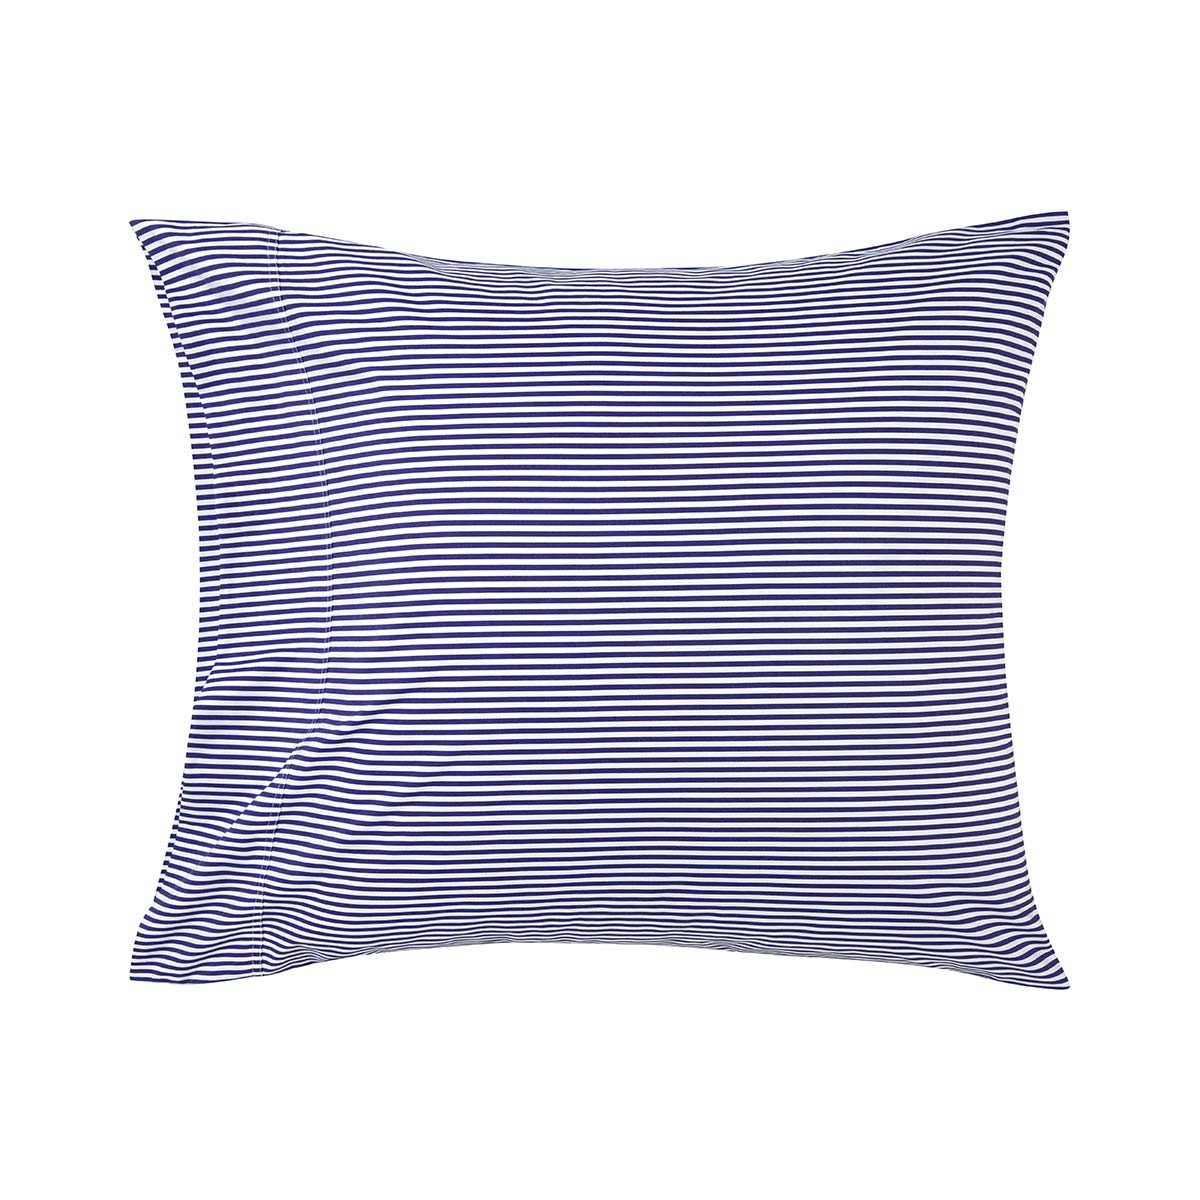 Bed Linen Shirting Stripe Navy White